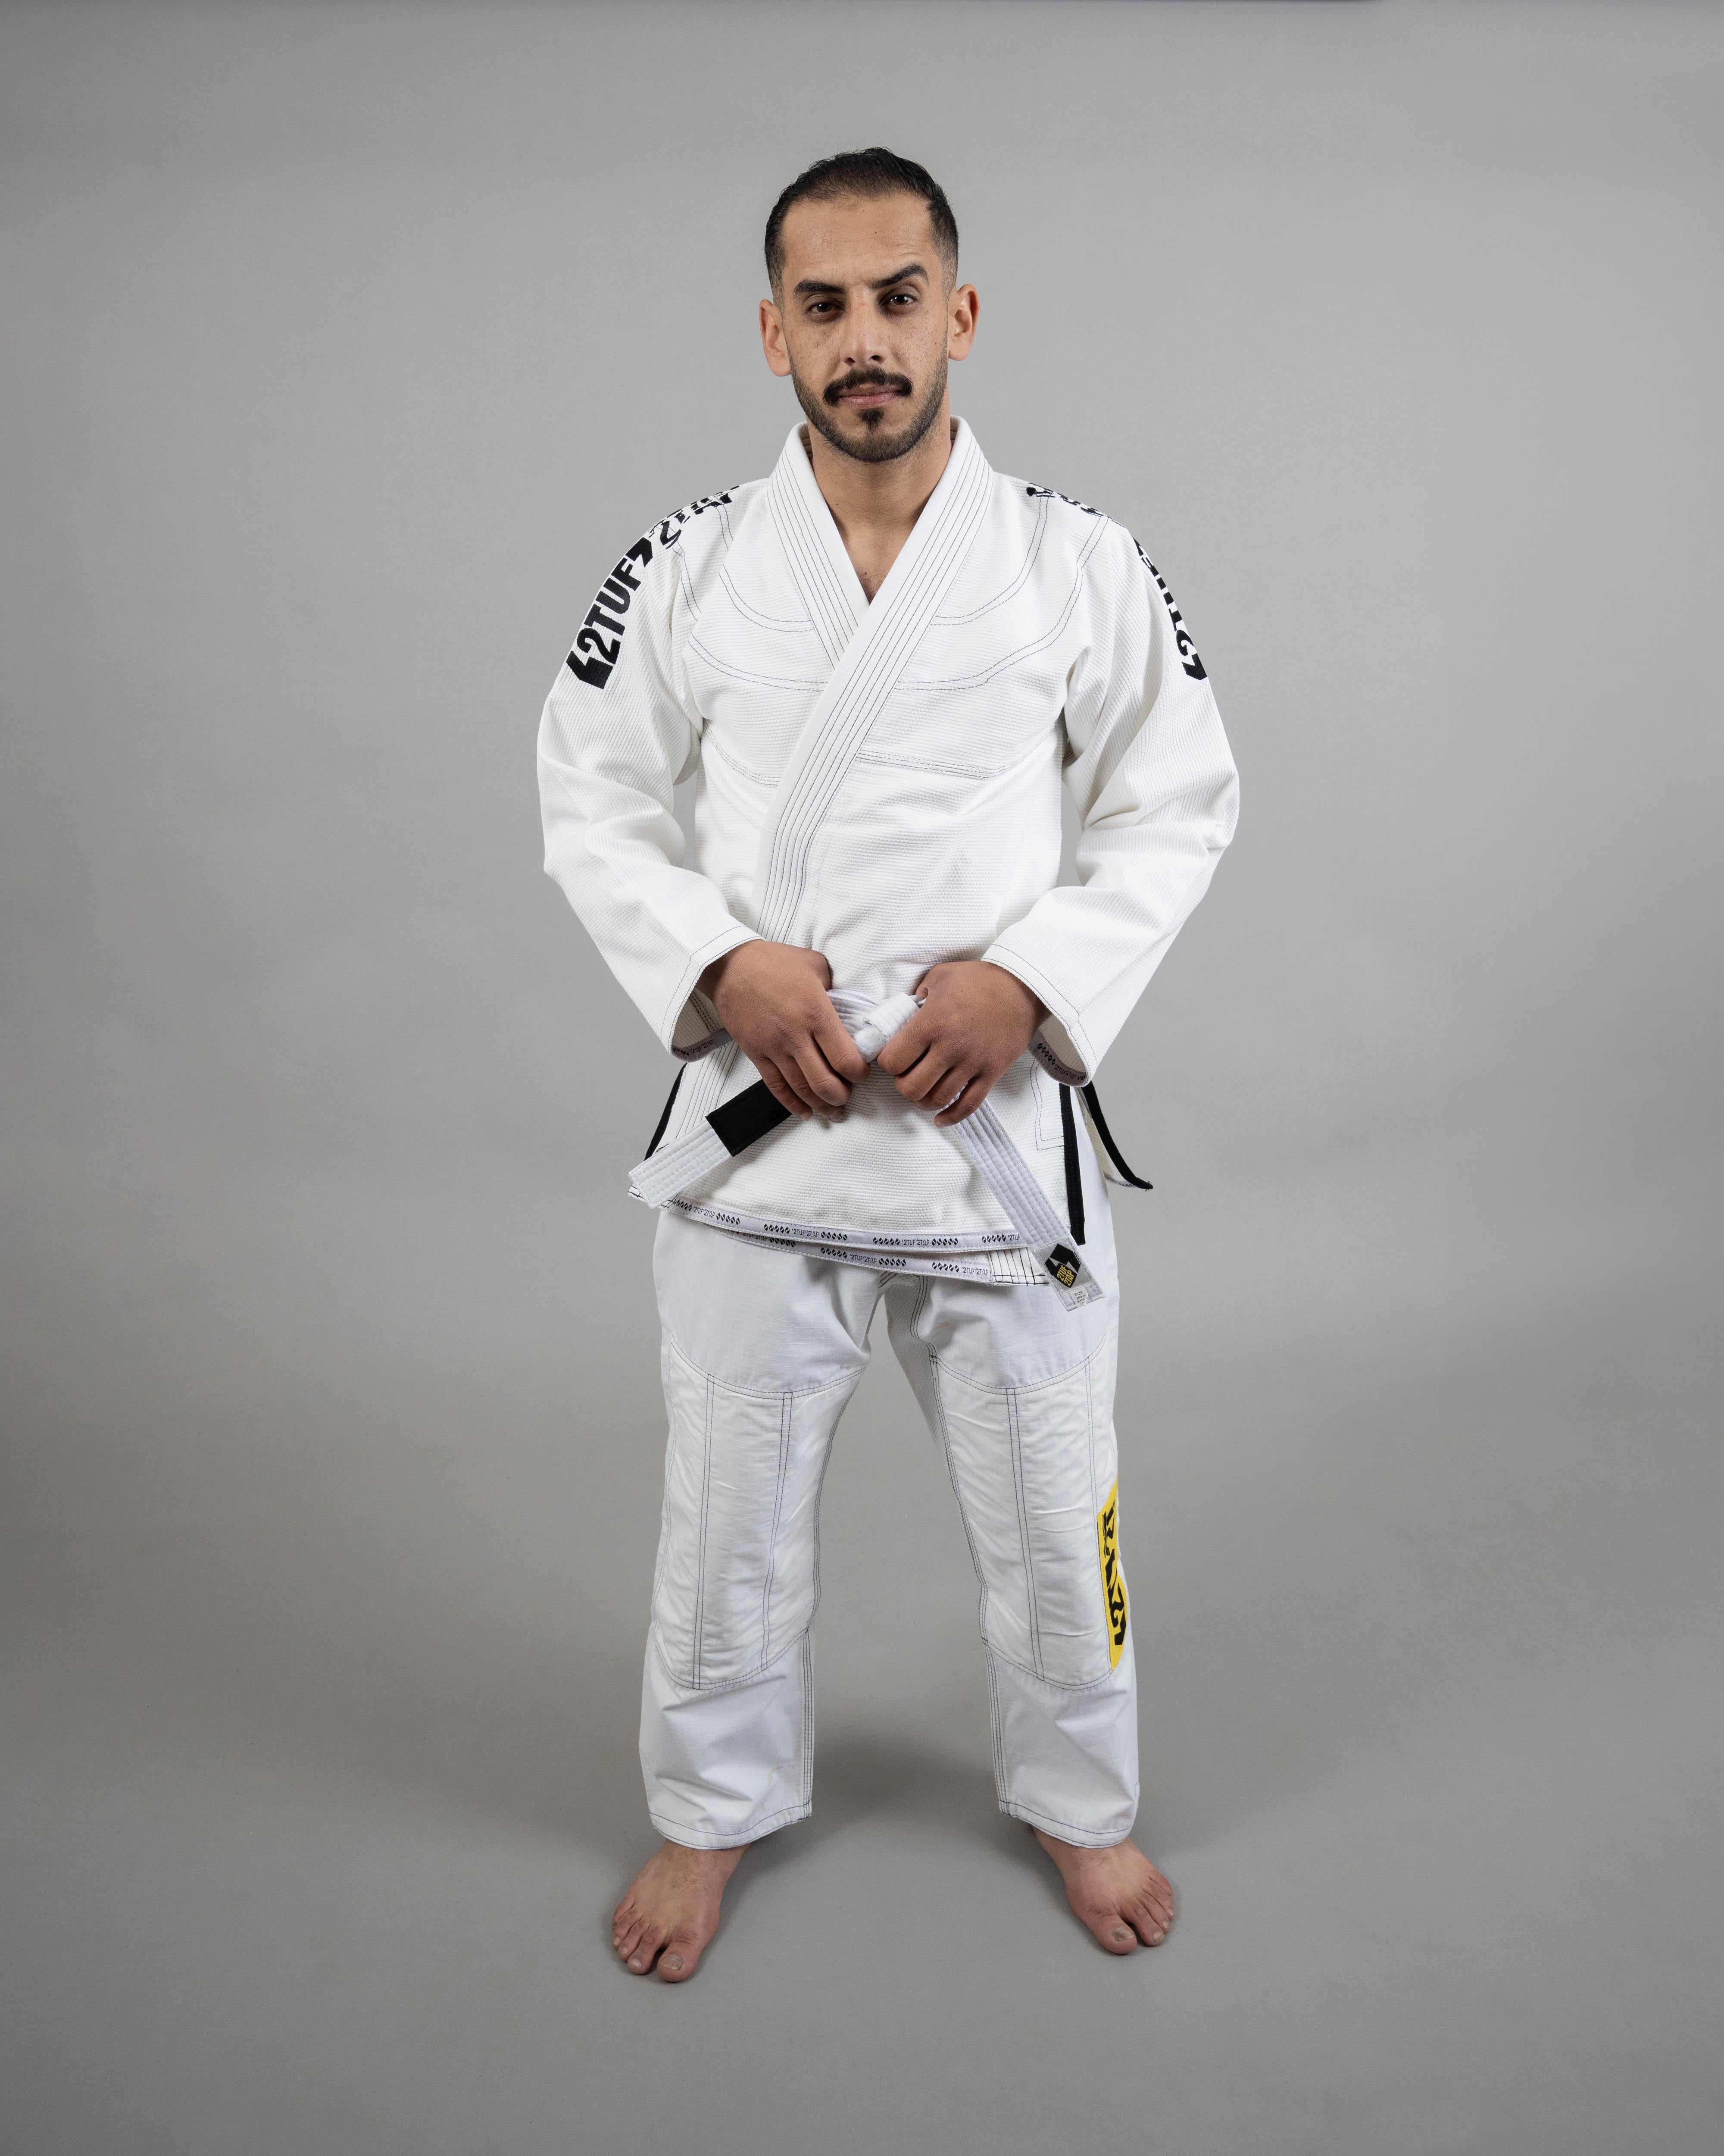 'Base' Jiu-Jitsu Gi Uniform - White/Yellow